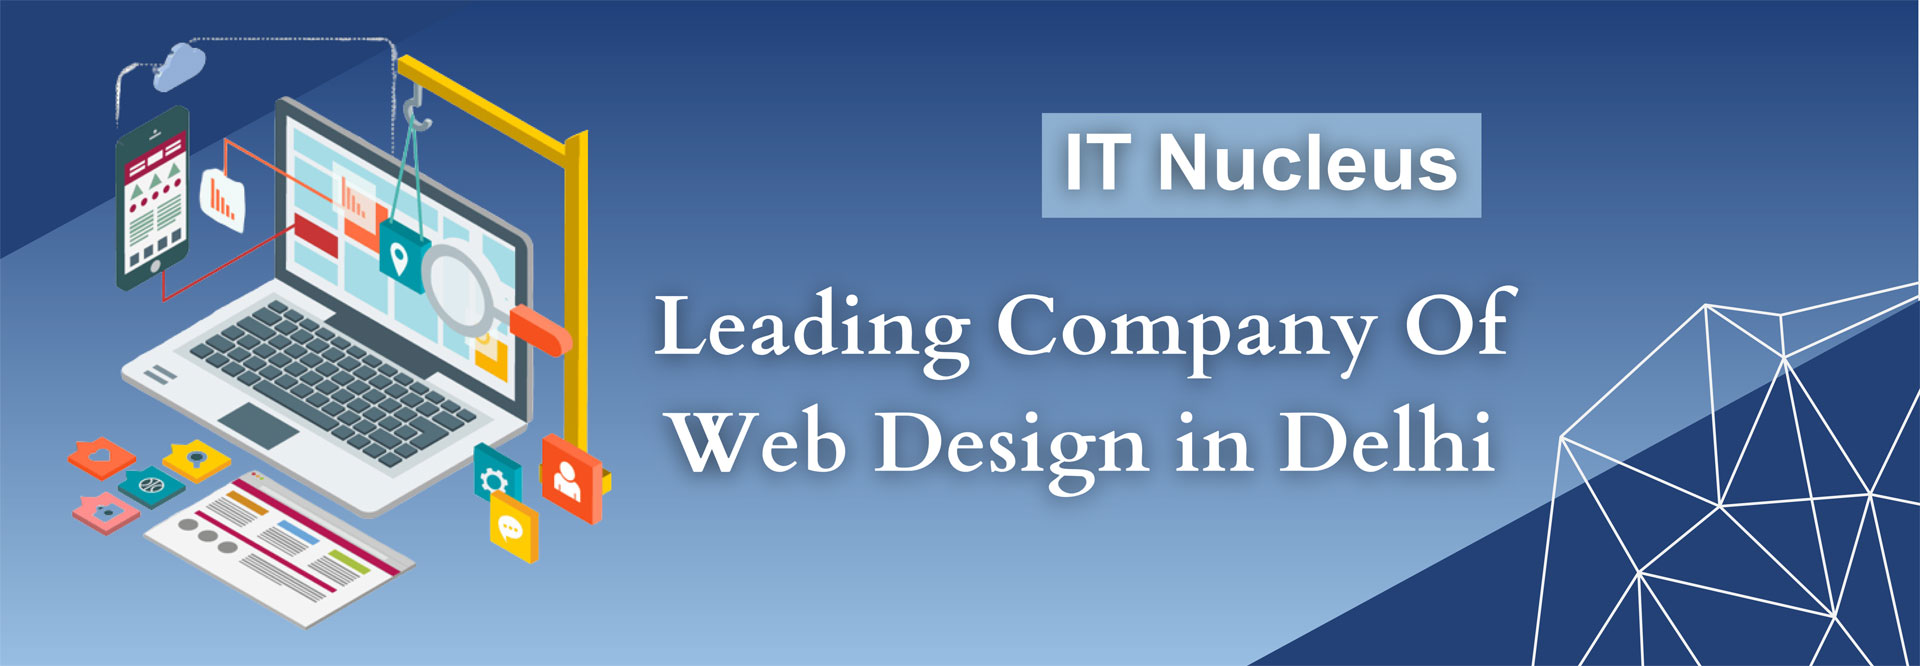 IT Nucleus Leading Company Of Web Design in Delhi